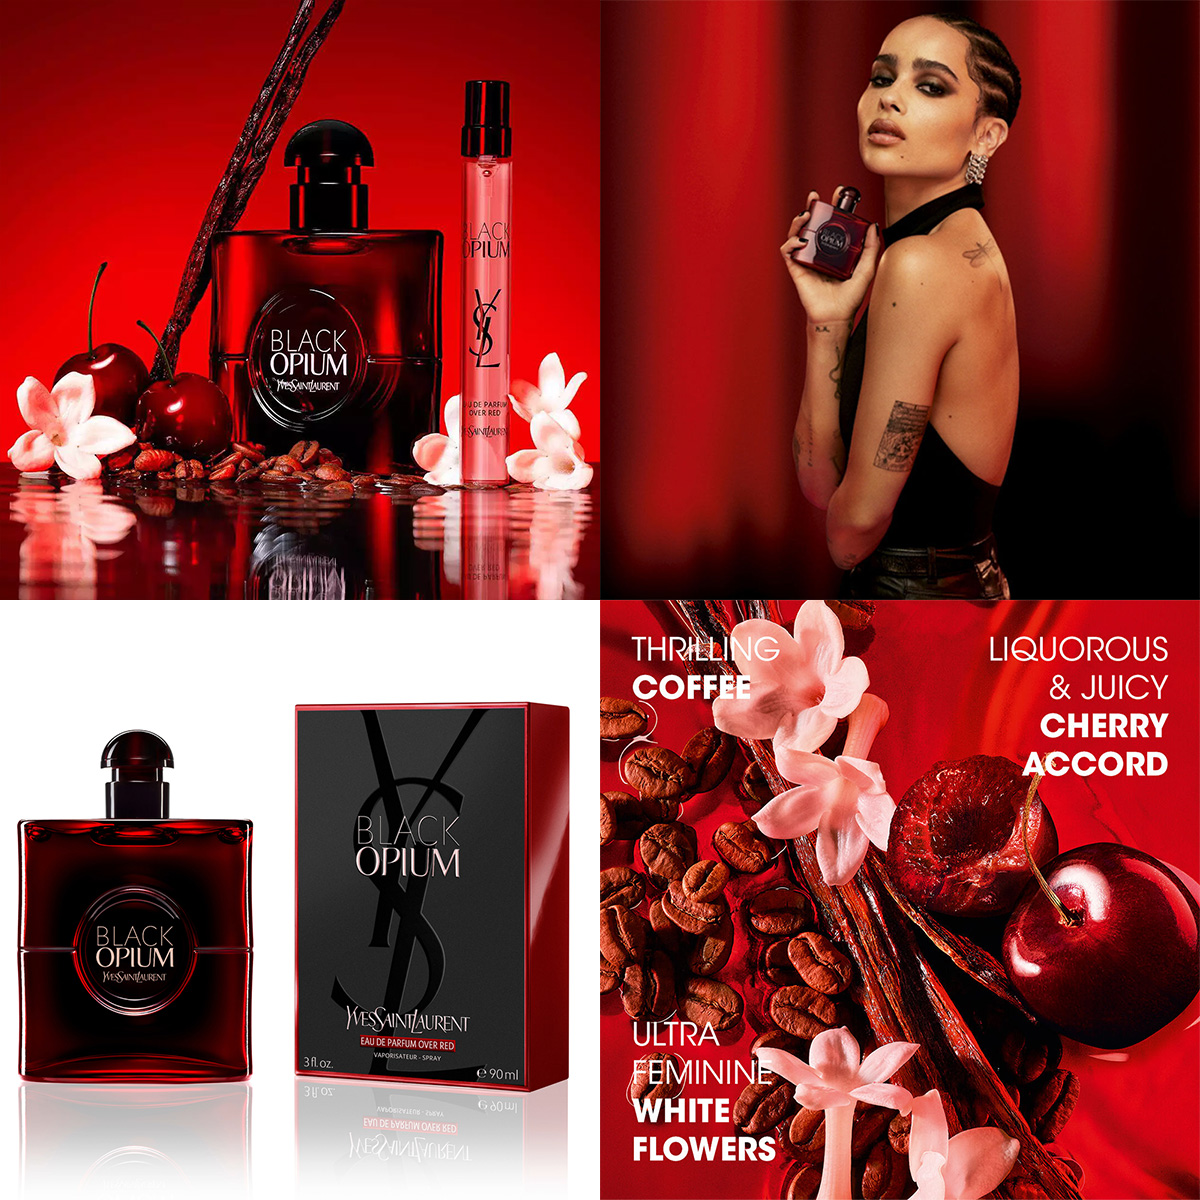 Yves Saint Laurent Black Opium Over Red Fragrance ad Zoe Kravitz model